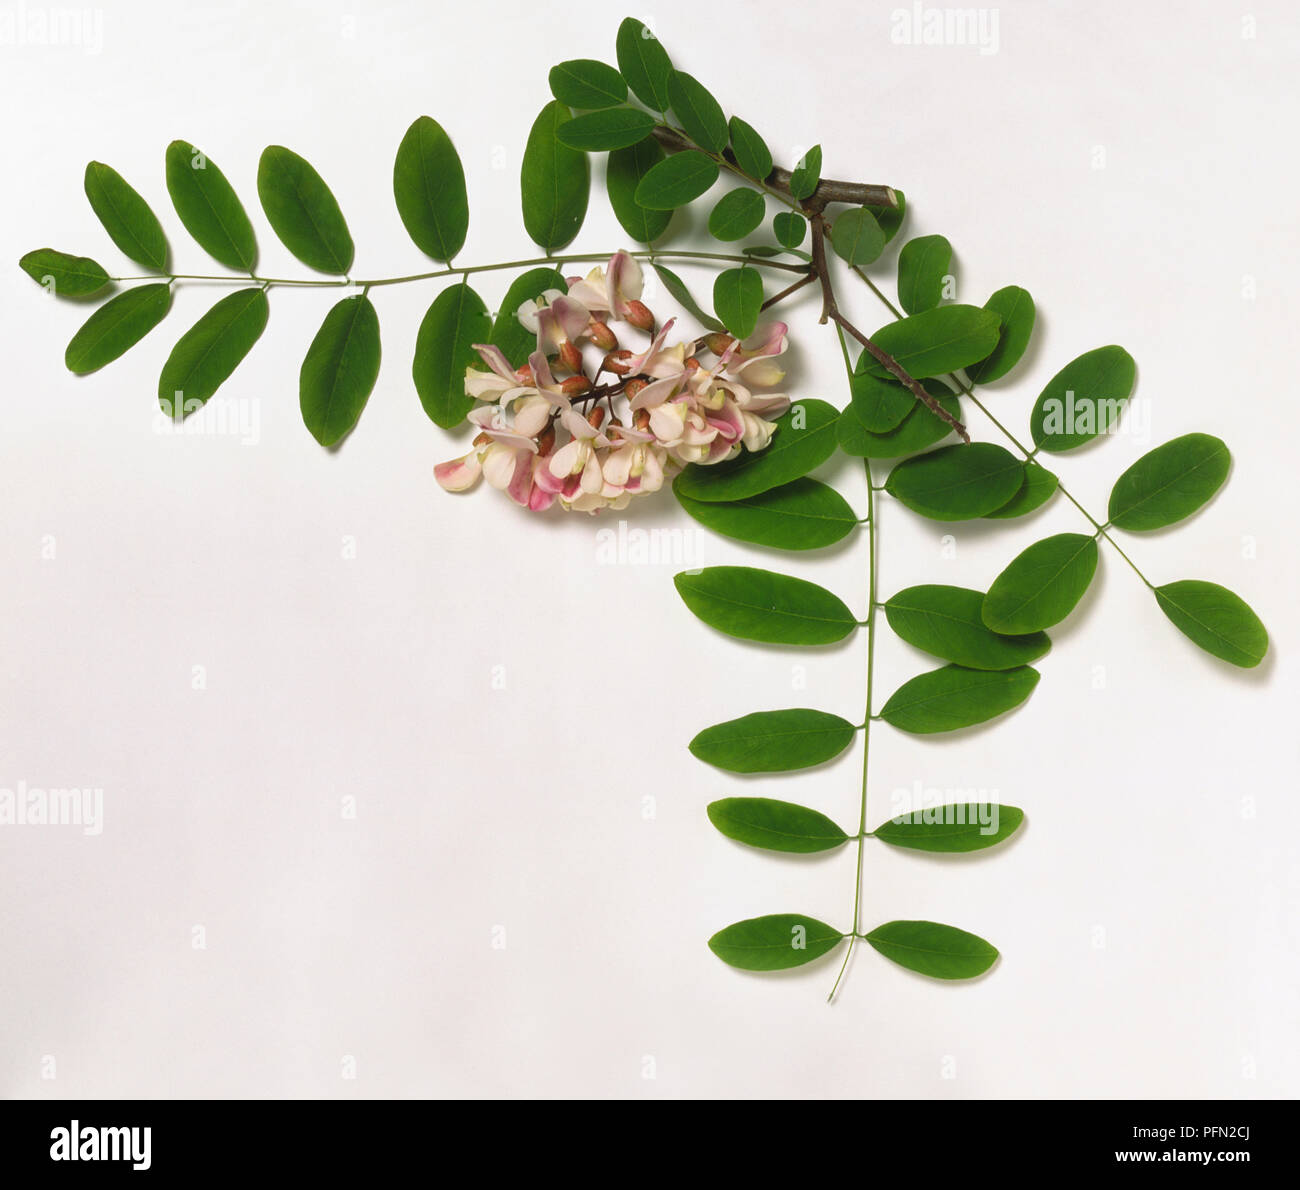 Leguminosen, Robinie x holdtii, grau-braunen Zweig Tipp, Gefiedert, längliche Blättchen arrangiert entgegengesetzt, und pea-wie, violett-rosa Blüten in hängenden Cluster getragen. Stockfoto